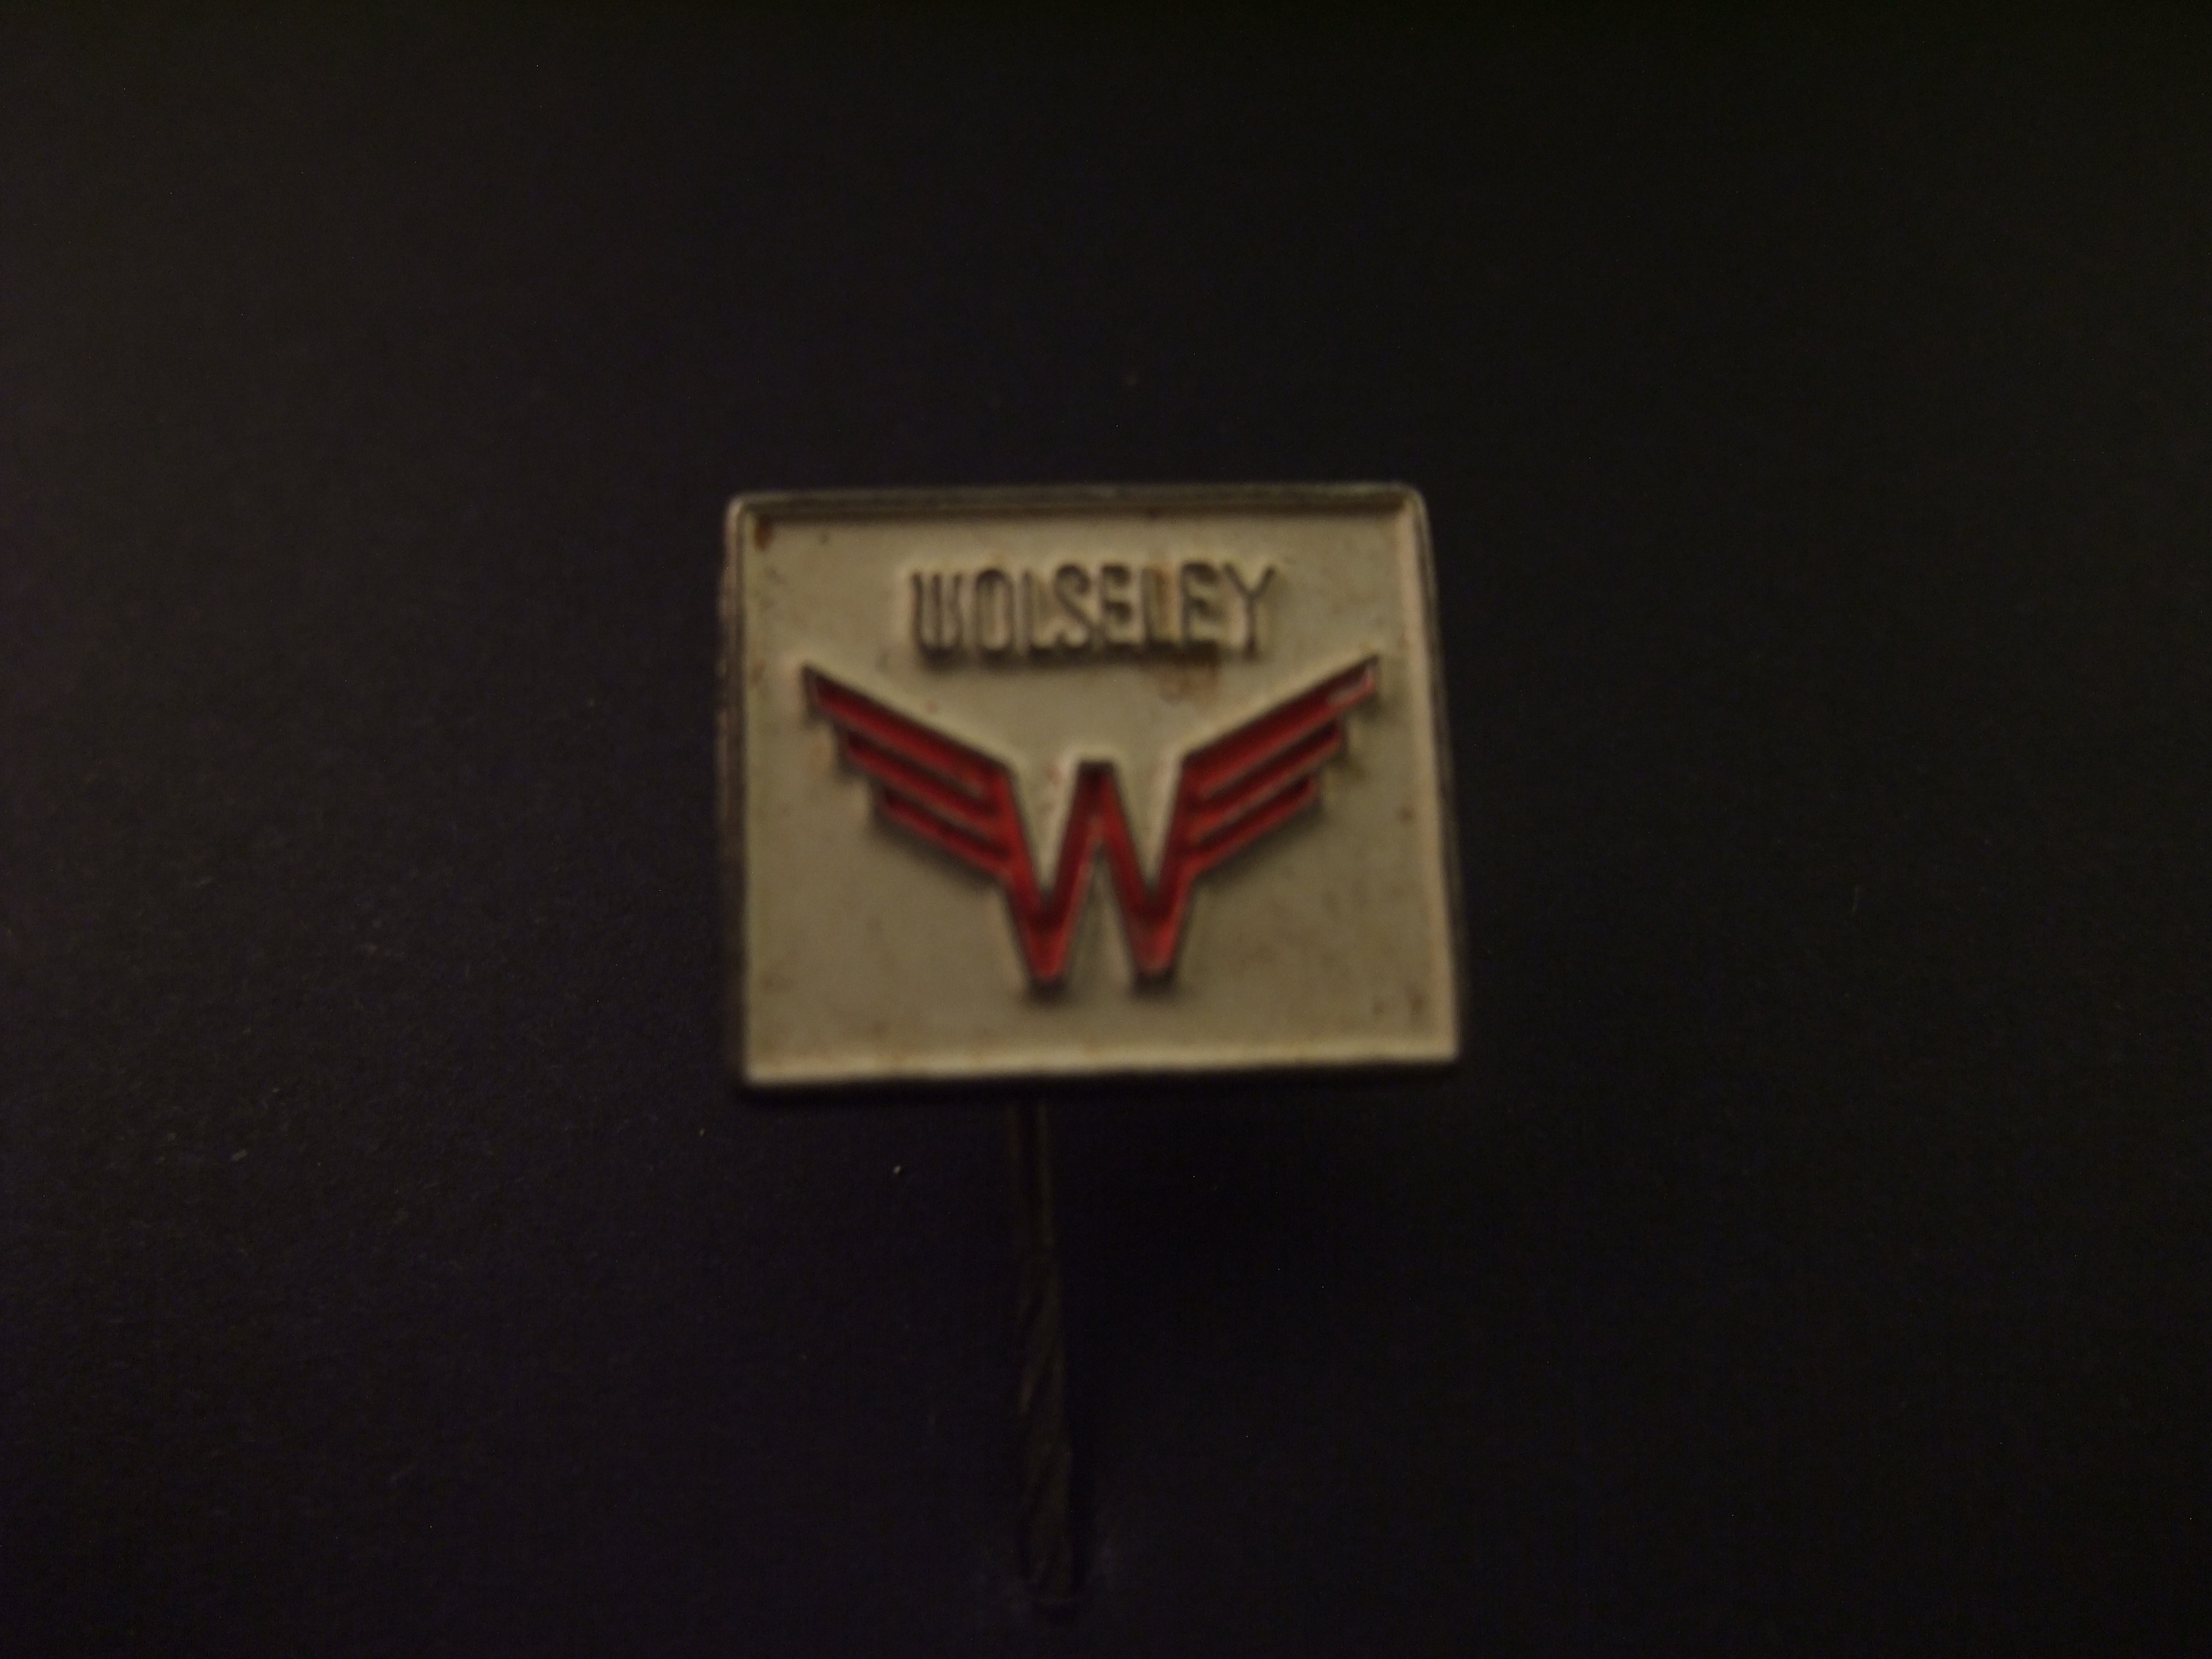 Wolseley oudste Brits automerk logo